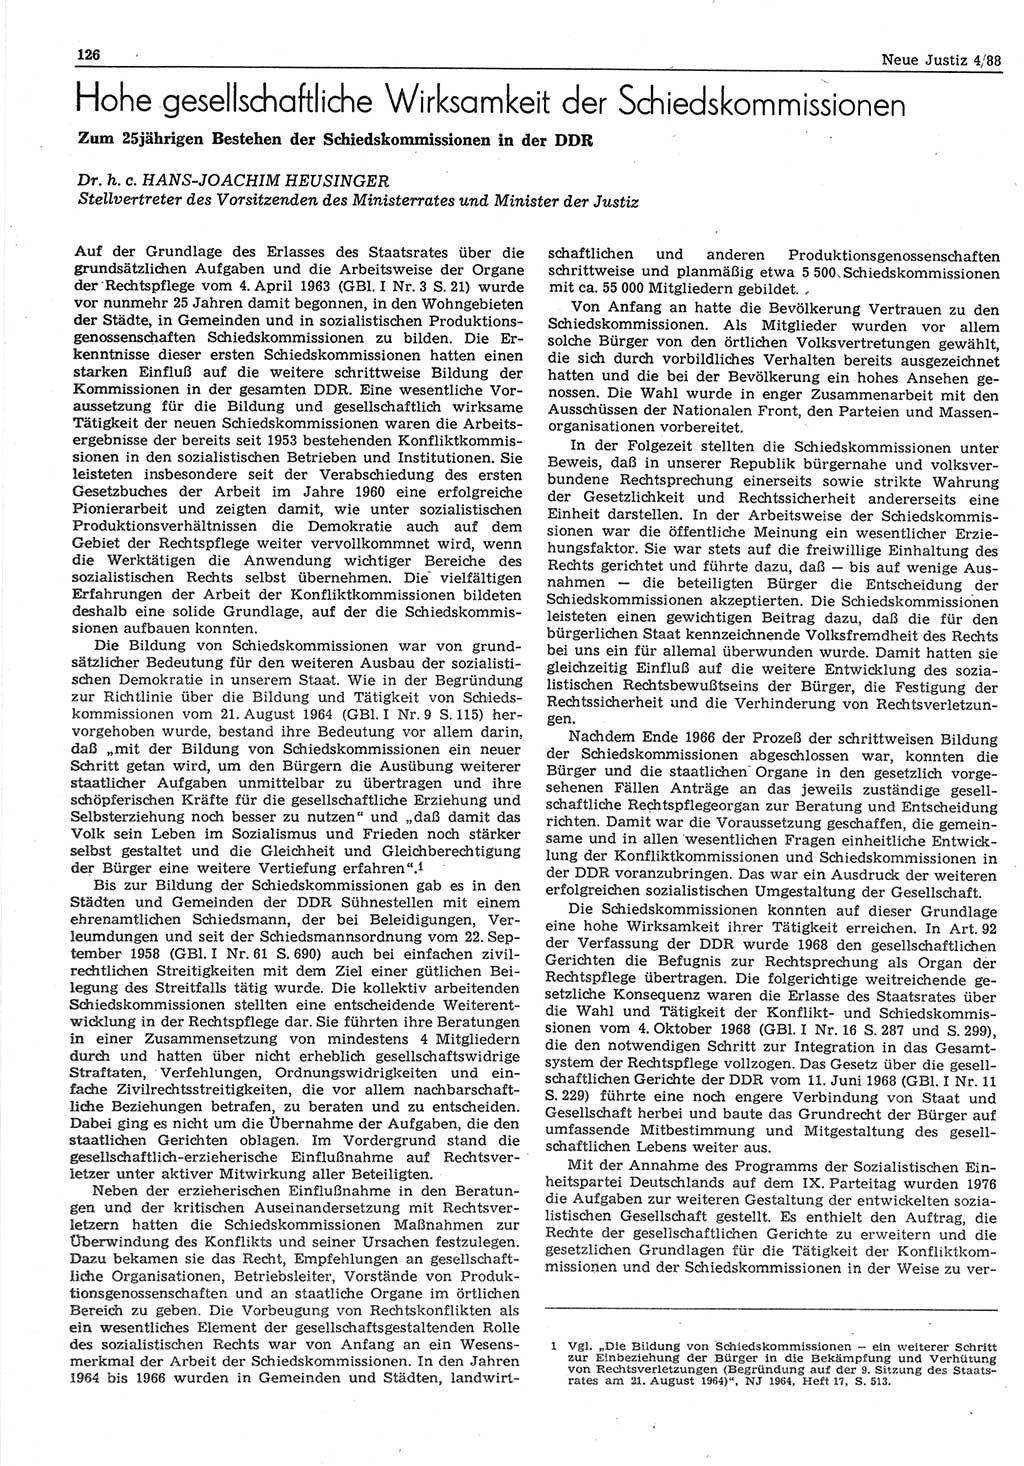 Neue Justiz (NJ), Zeitschrift für sozialistisches Recht und Gesetzlichkeit [Deutsche Demokratische Republik (DDR)], 42. Jahrgang 1988, Seite 126 (NJ DDR 1988, S. 126)